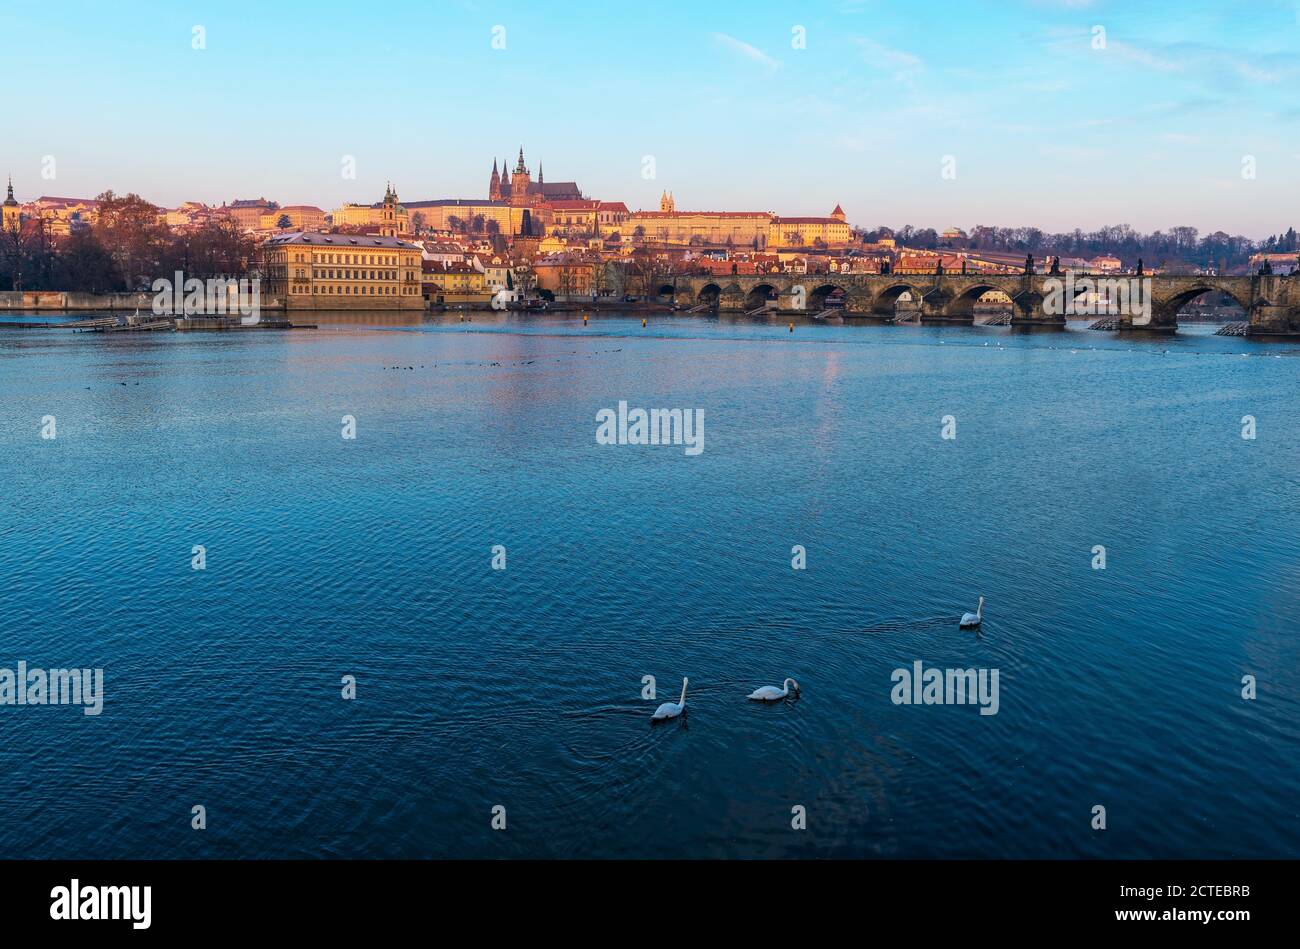 El Puente de Carlos y el Castillo de Praga al amanecer junto al río Vltava con cisnes, Praga, República Checa. Foto de stock